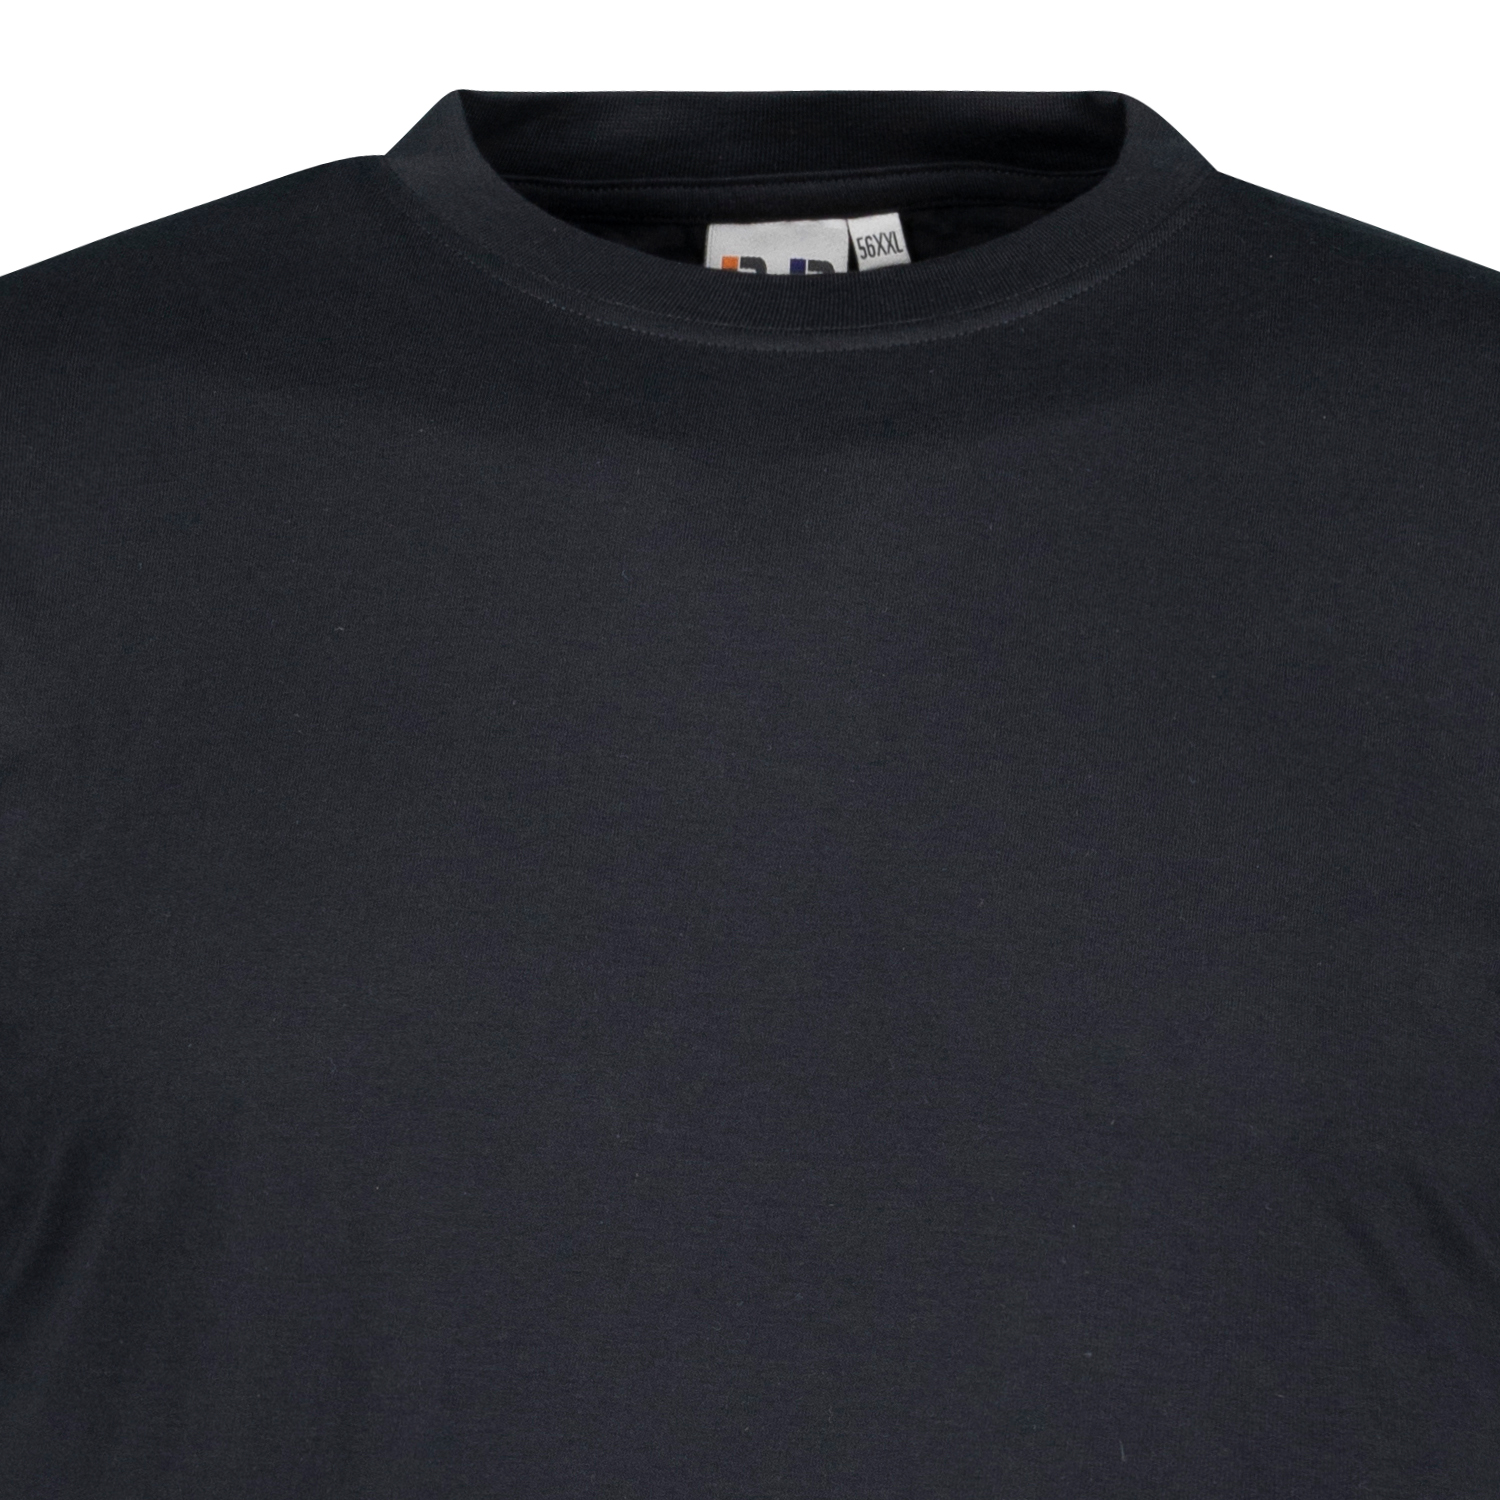 Schwarzes T-Shirt im Doppelpack in großen Größen bis 8XL von Big Basics
